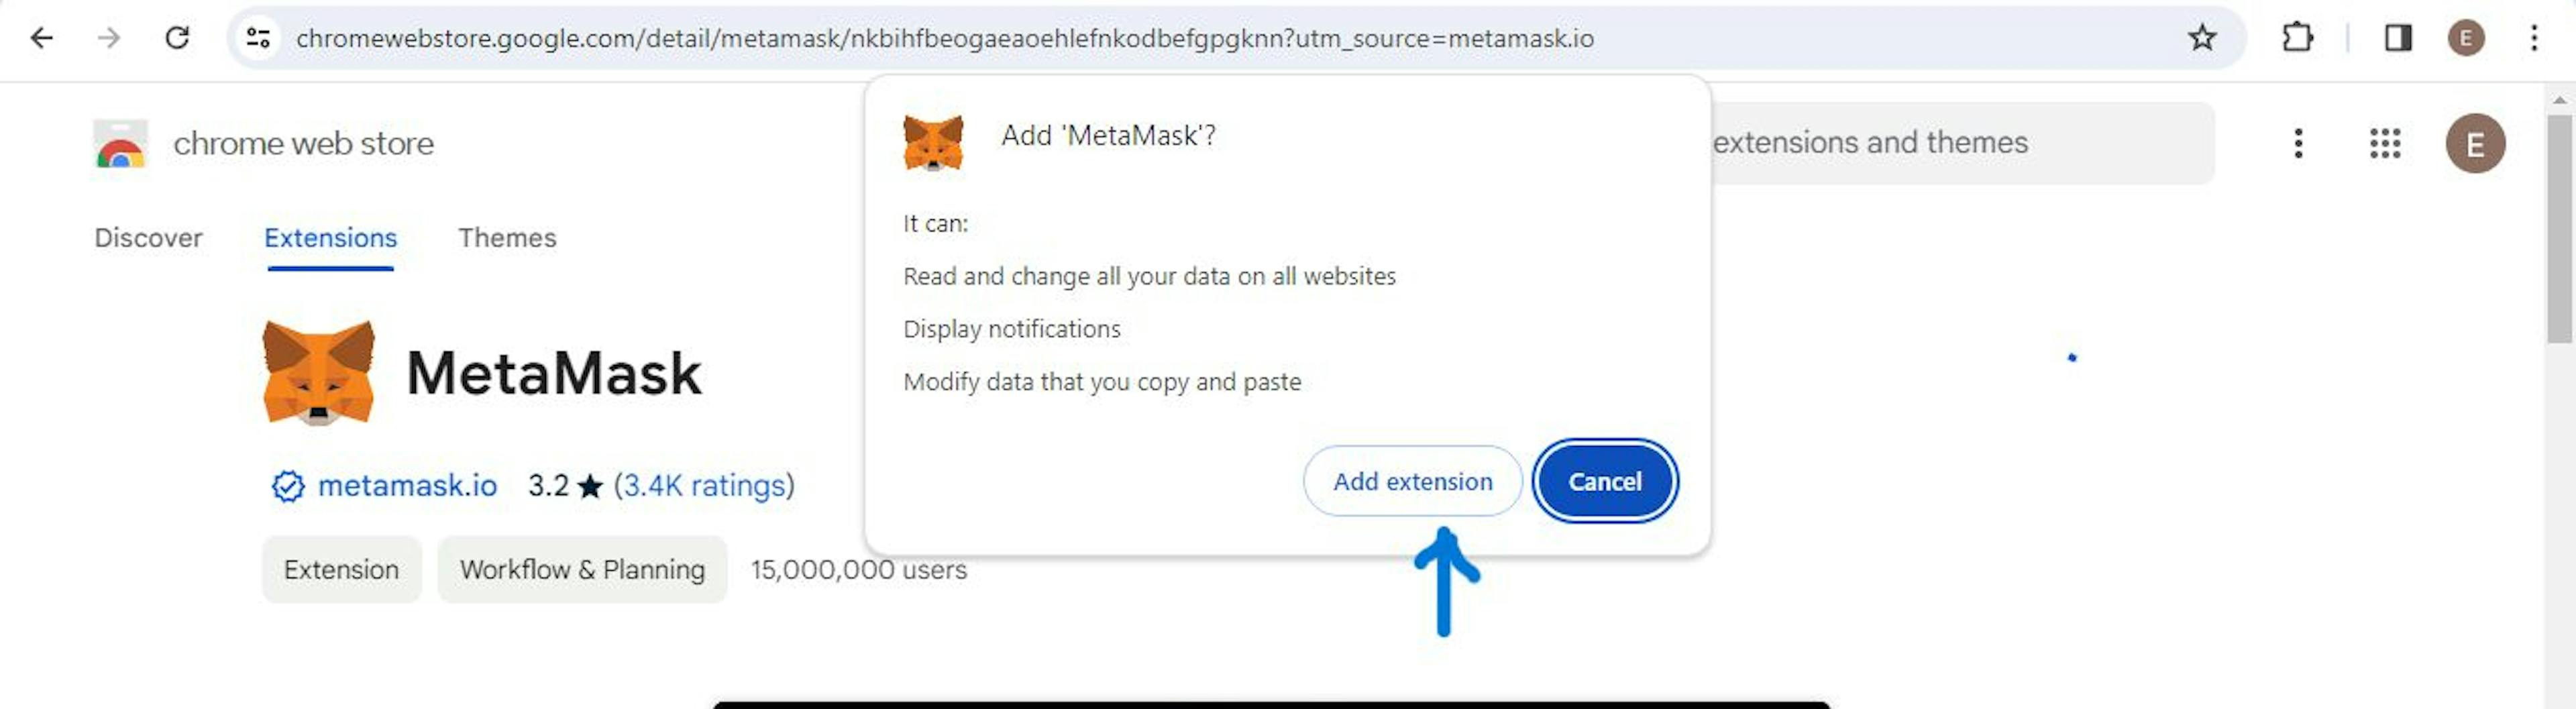 Hình ảnh hướng dẫn cách thêm tiện ích mở rộng MetaMask vào trình duyệt Chrome.